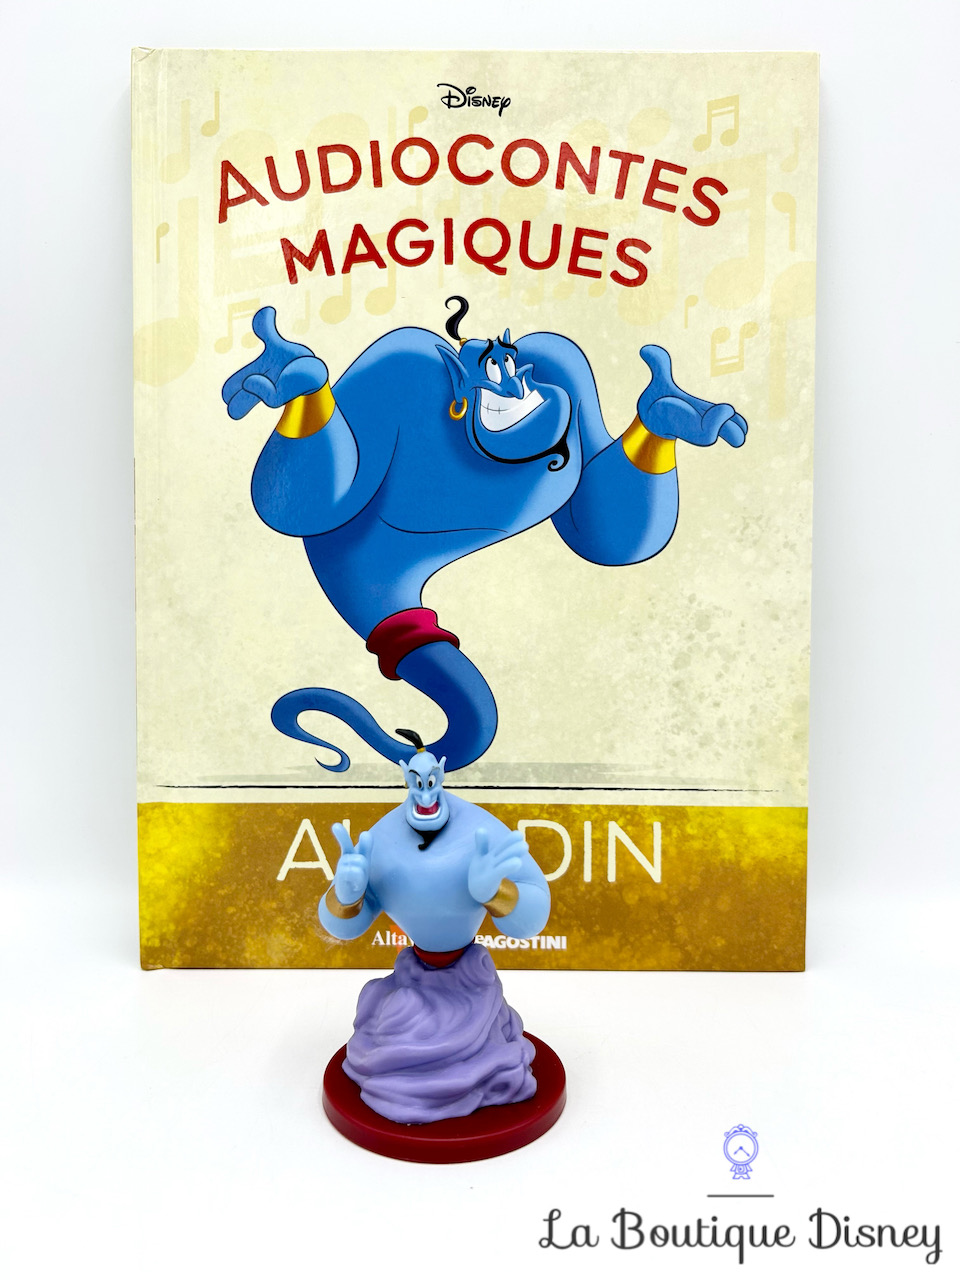 Altaya : Les AudioContes Magiques Disney, une collection dans son